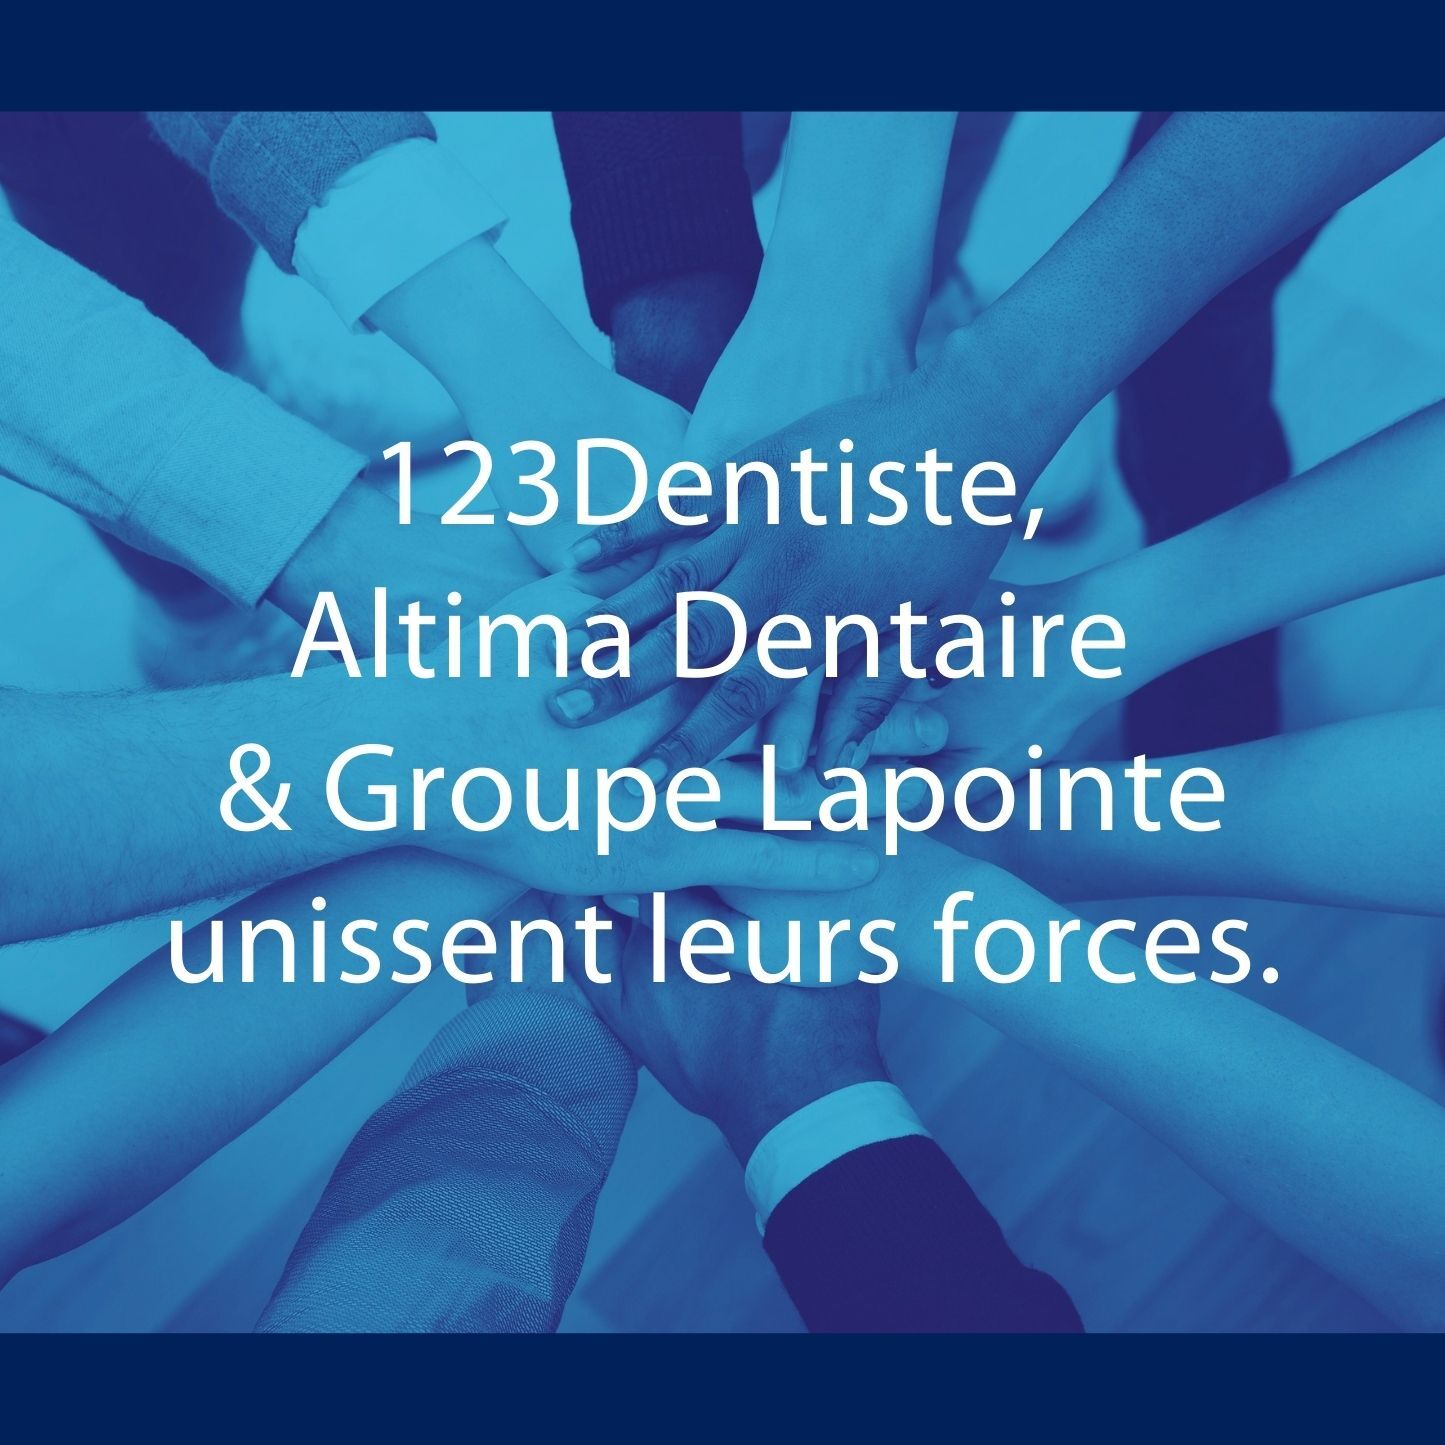 123Dentiste s’associe à Altima Dentaire et au Groupe Lapointe